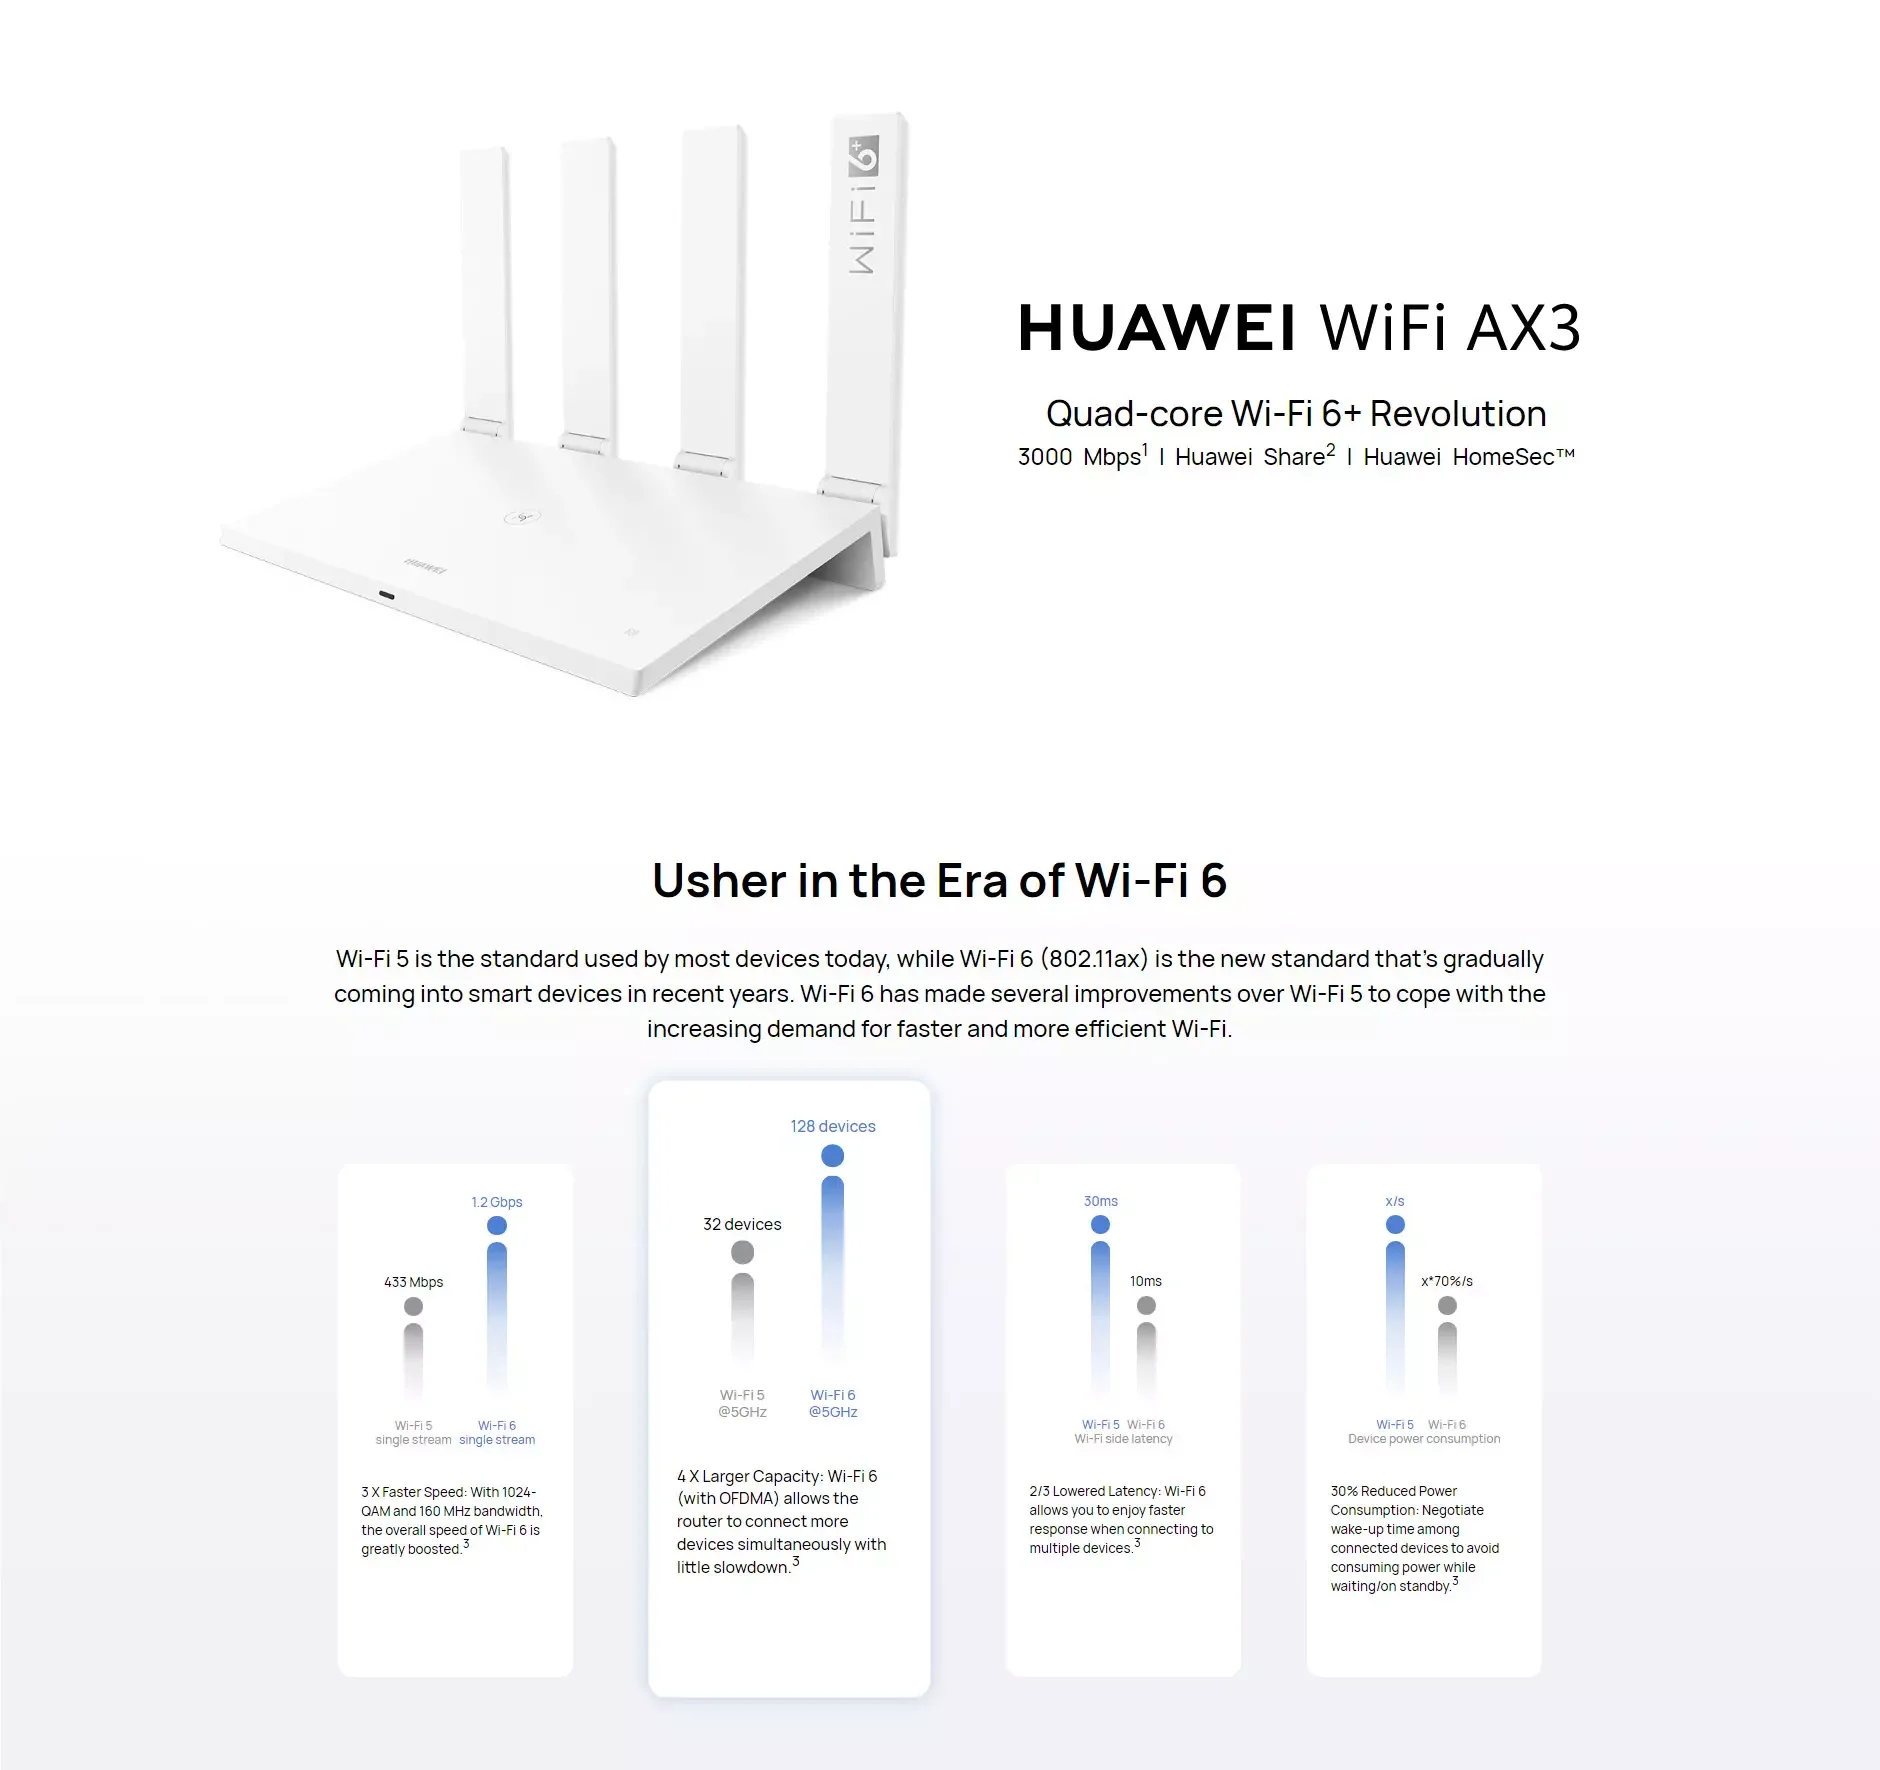 Huawei wifi ax3 pro. Роутер Huawei Wi-Fi ax3 Quad-Core. Huawei WIFI ax3 (Quad-Core). Роутер Huawei WIFI 6+ ax3. Роутер Honor ax3.